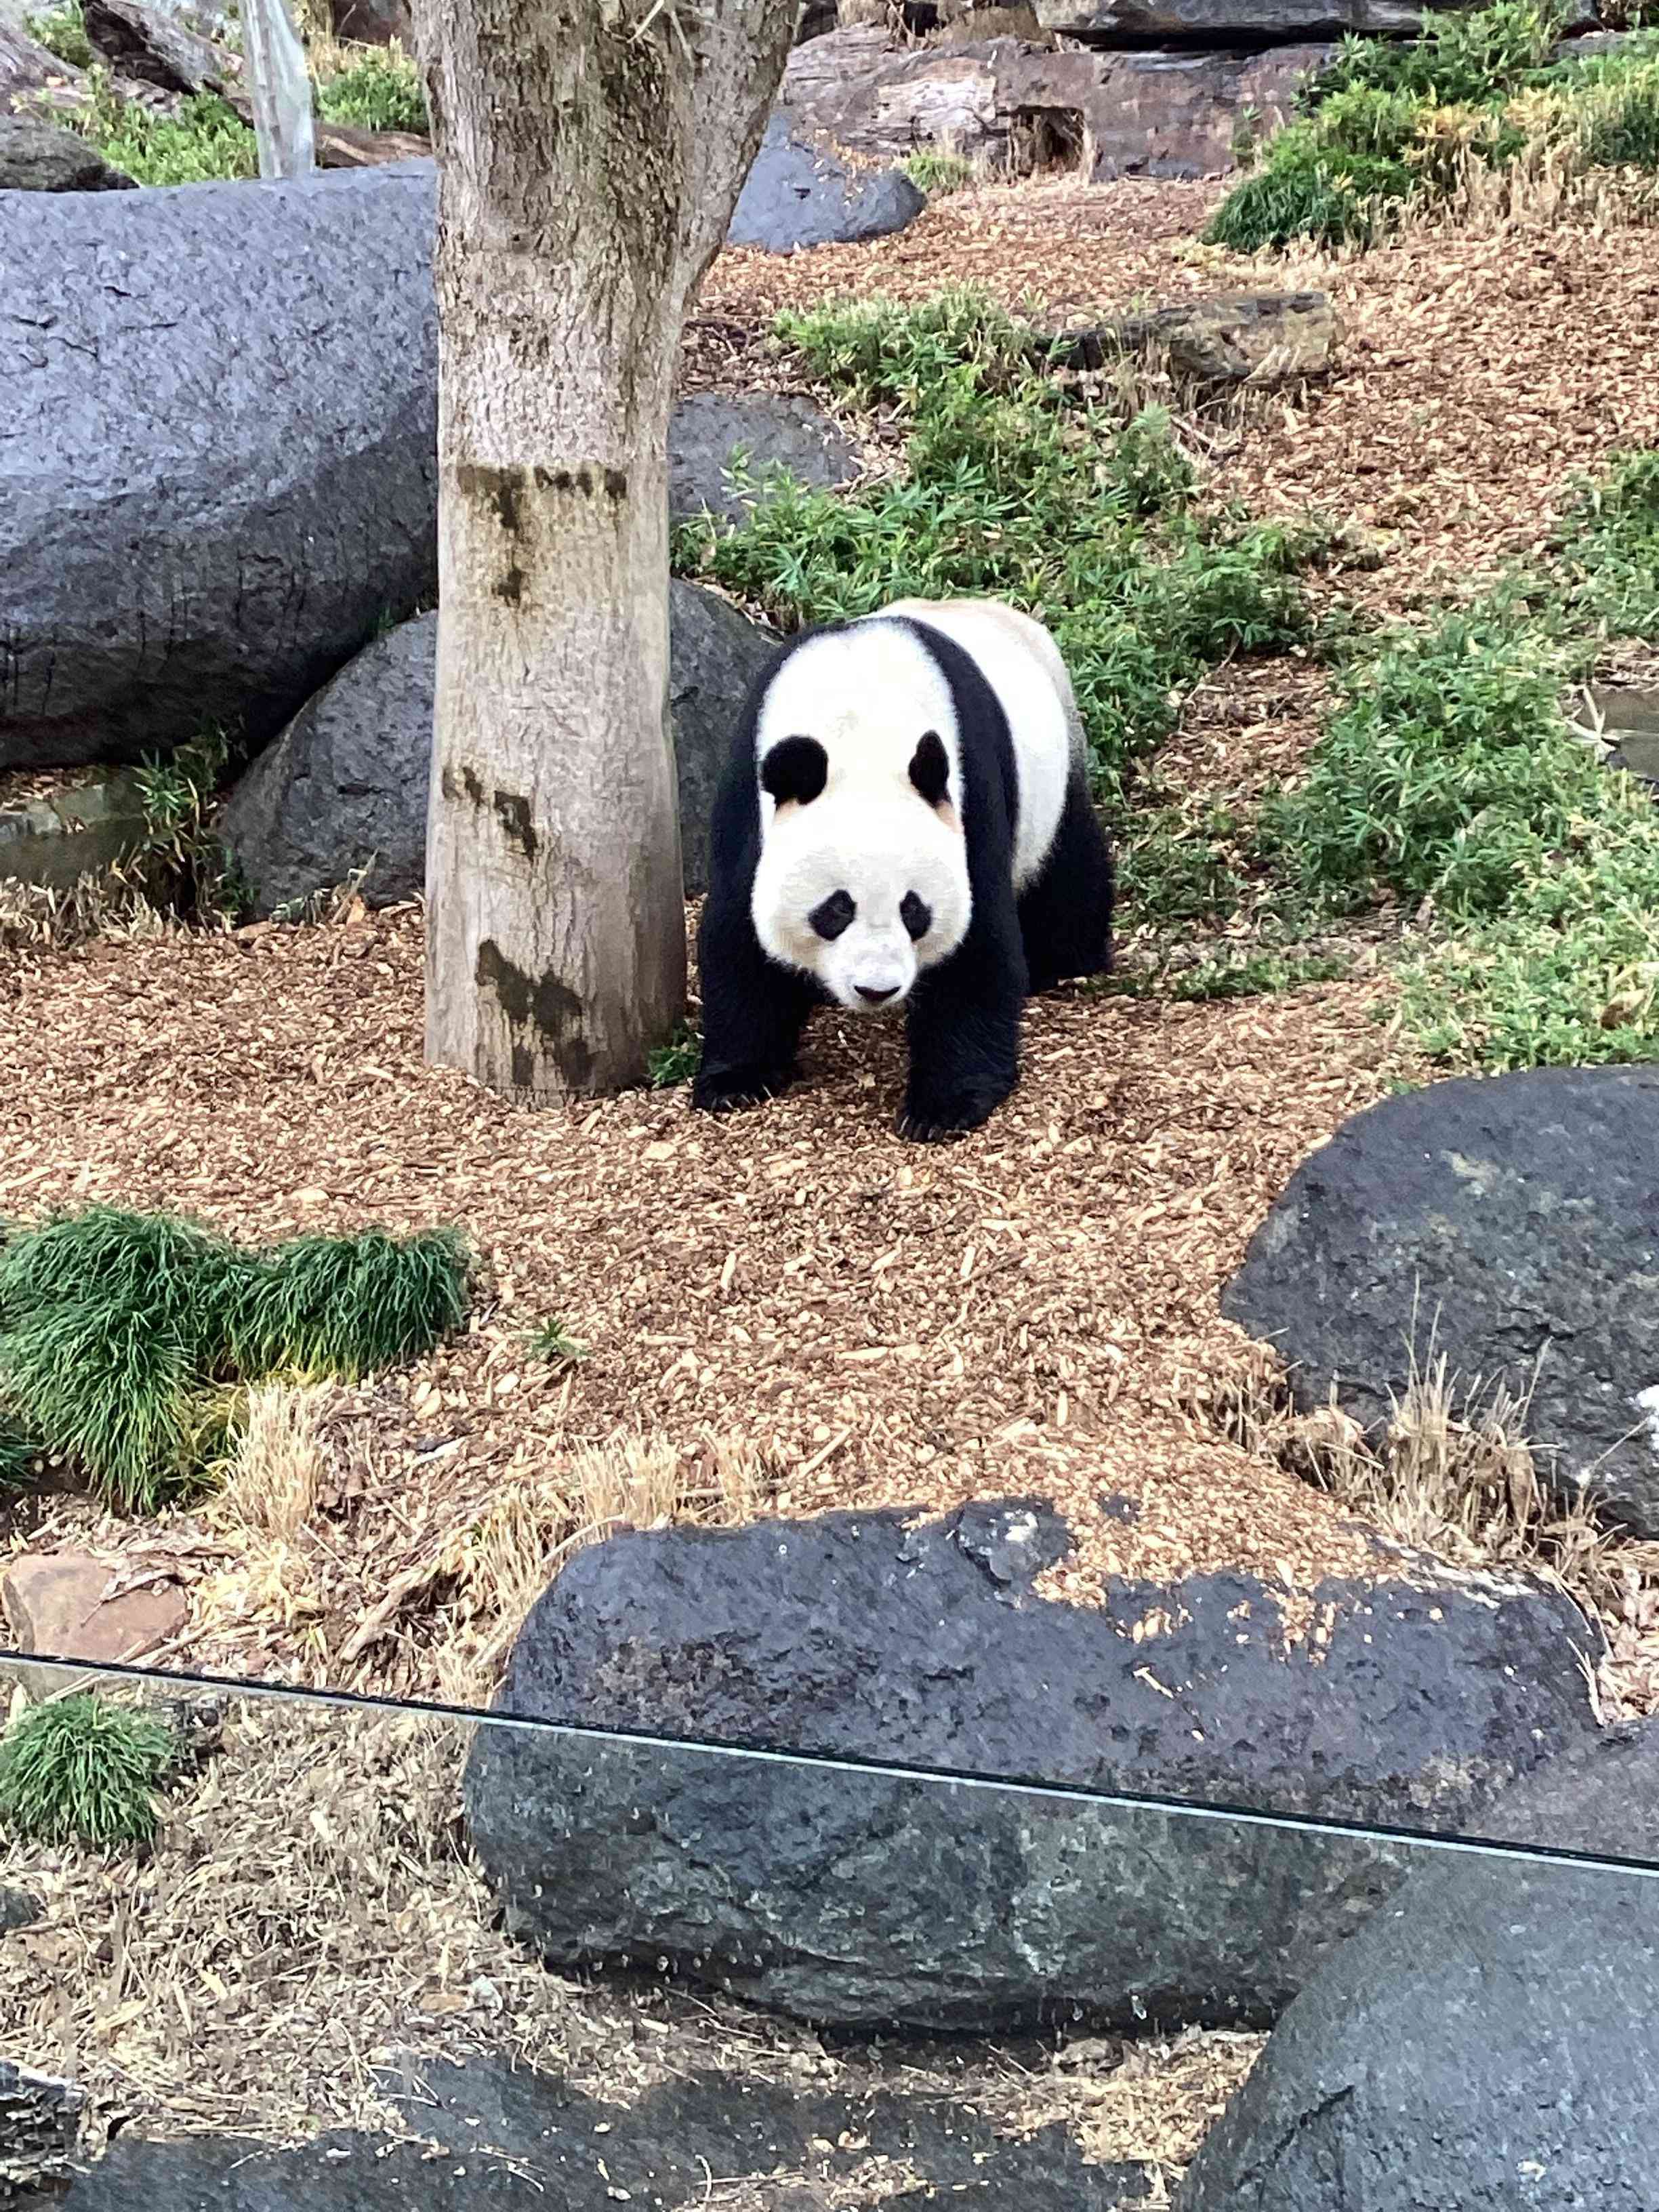 Panda outside